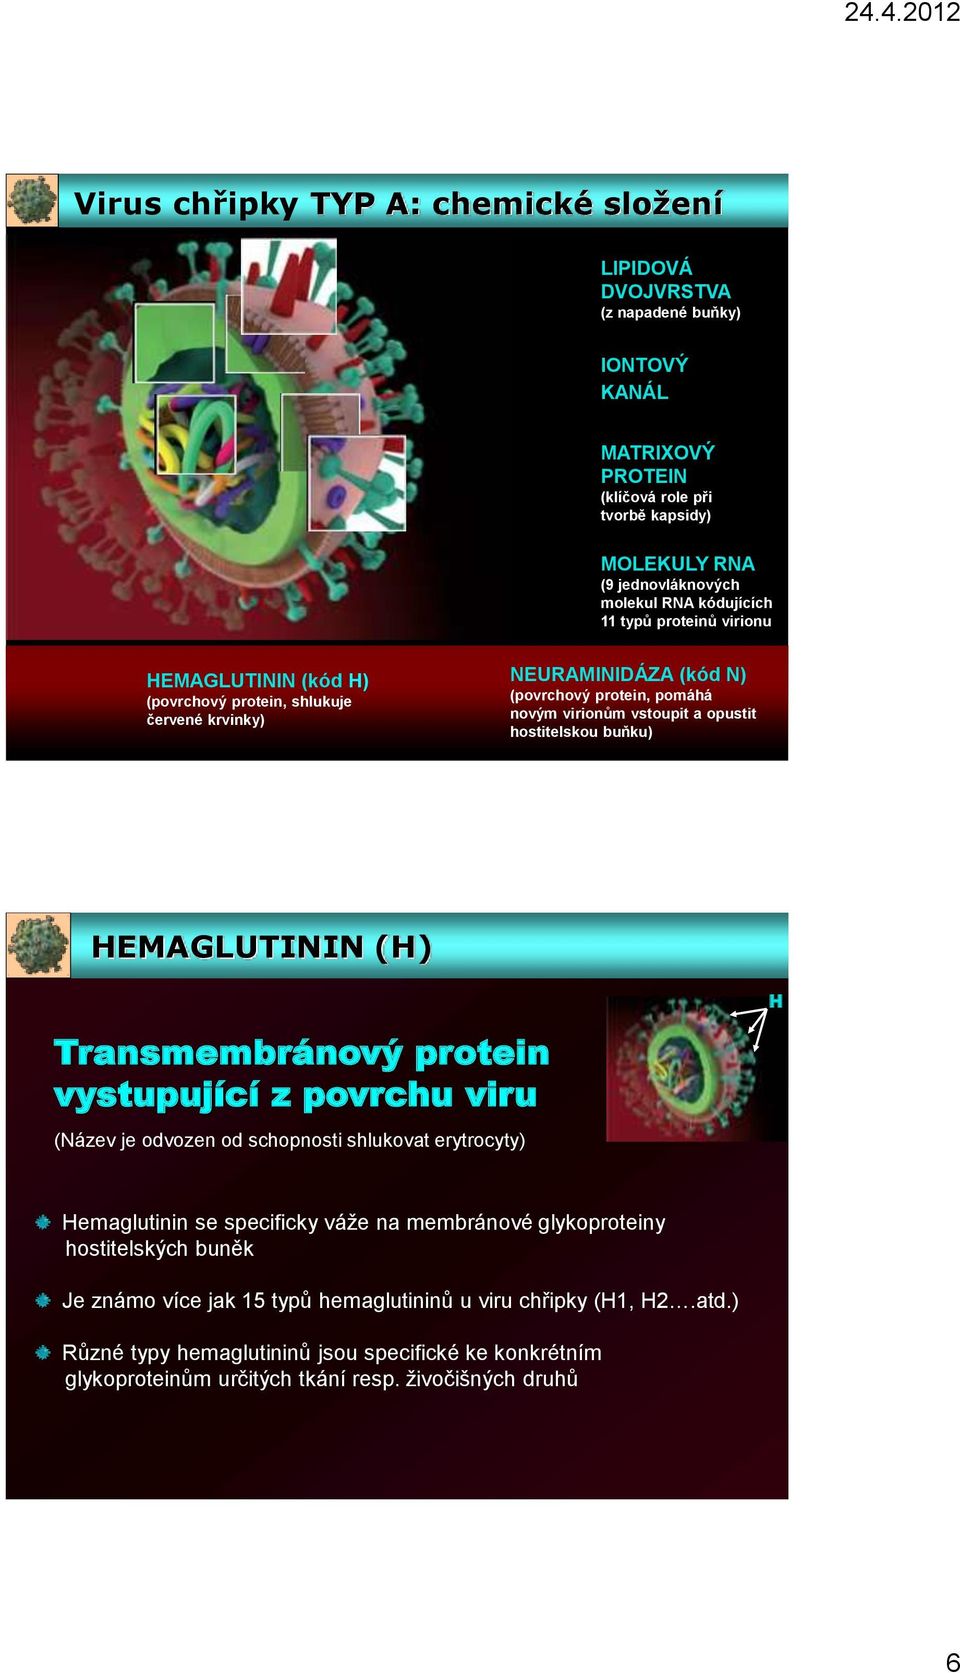 hostitelskou buňku) HEMAGLUTININ (H) H Transmembránový protein vystupující z povrchu viru (Název je odvozen od schopnosti shlukovat erytrocyty) Hemaglutinin se specificky váže na membránové